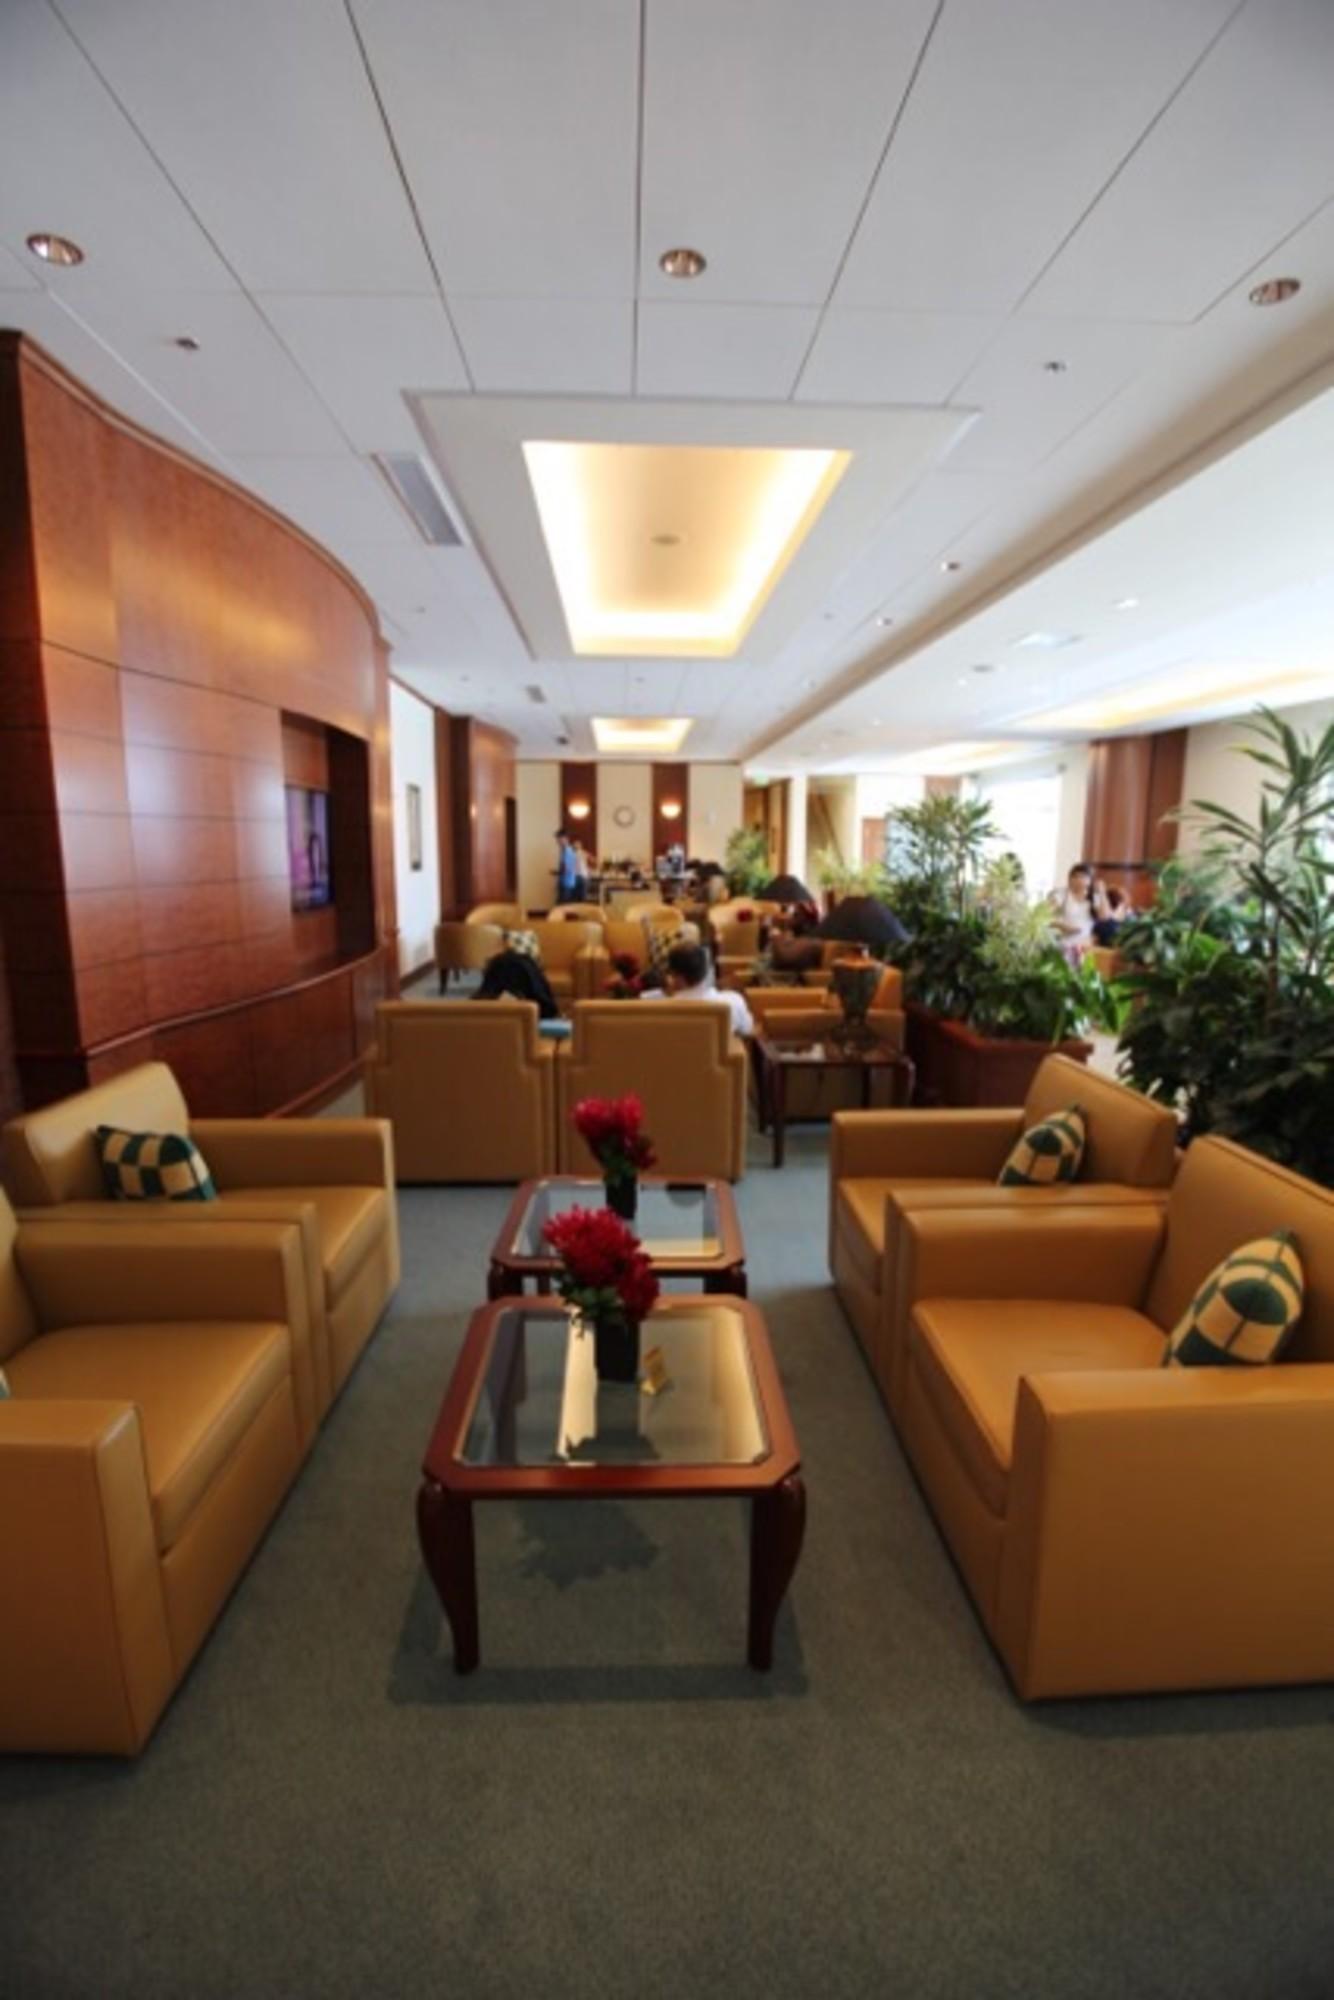 The Emirates Lounge image 14 of 28